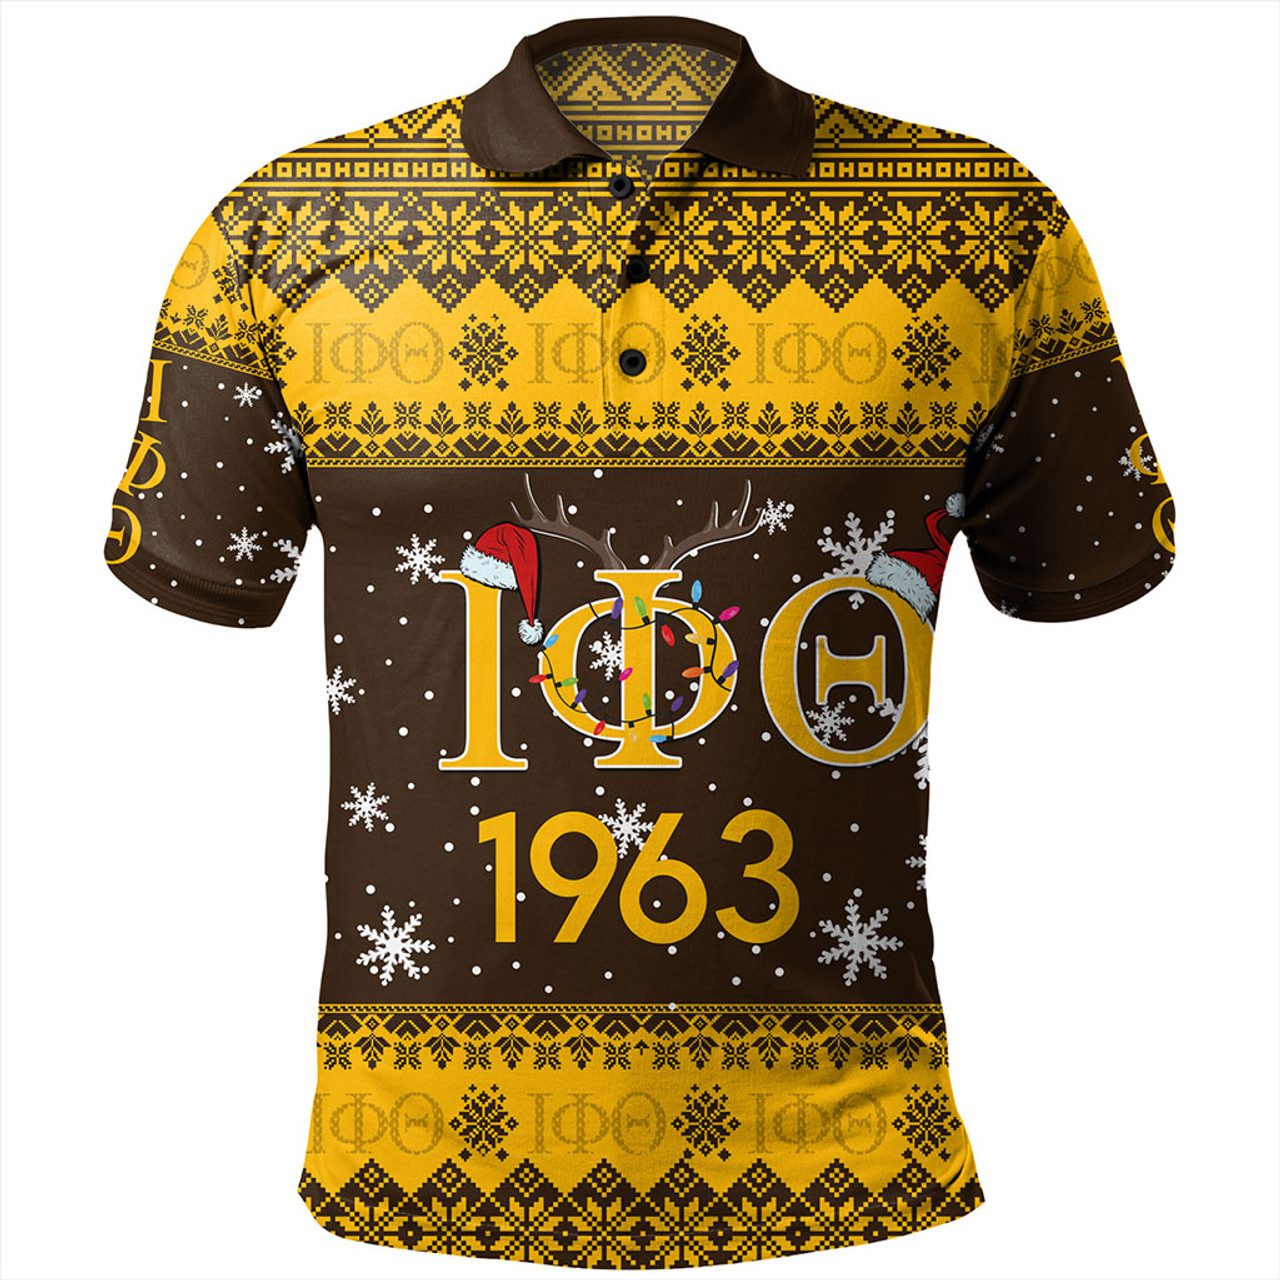 Iota Phi Theta Polo Shirt Christmas Symbols Design